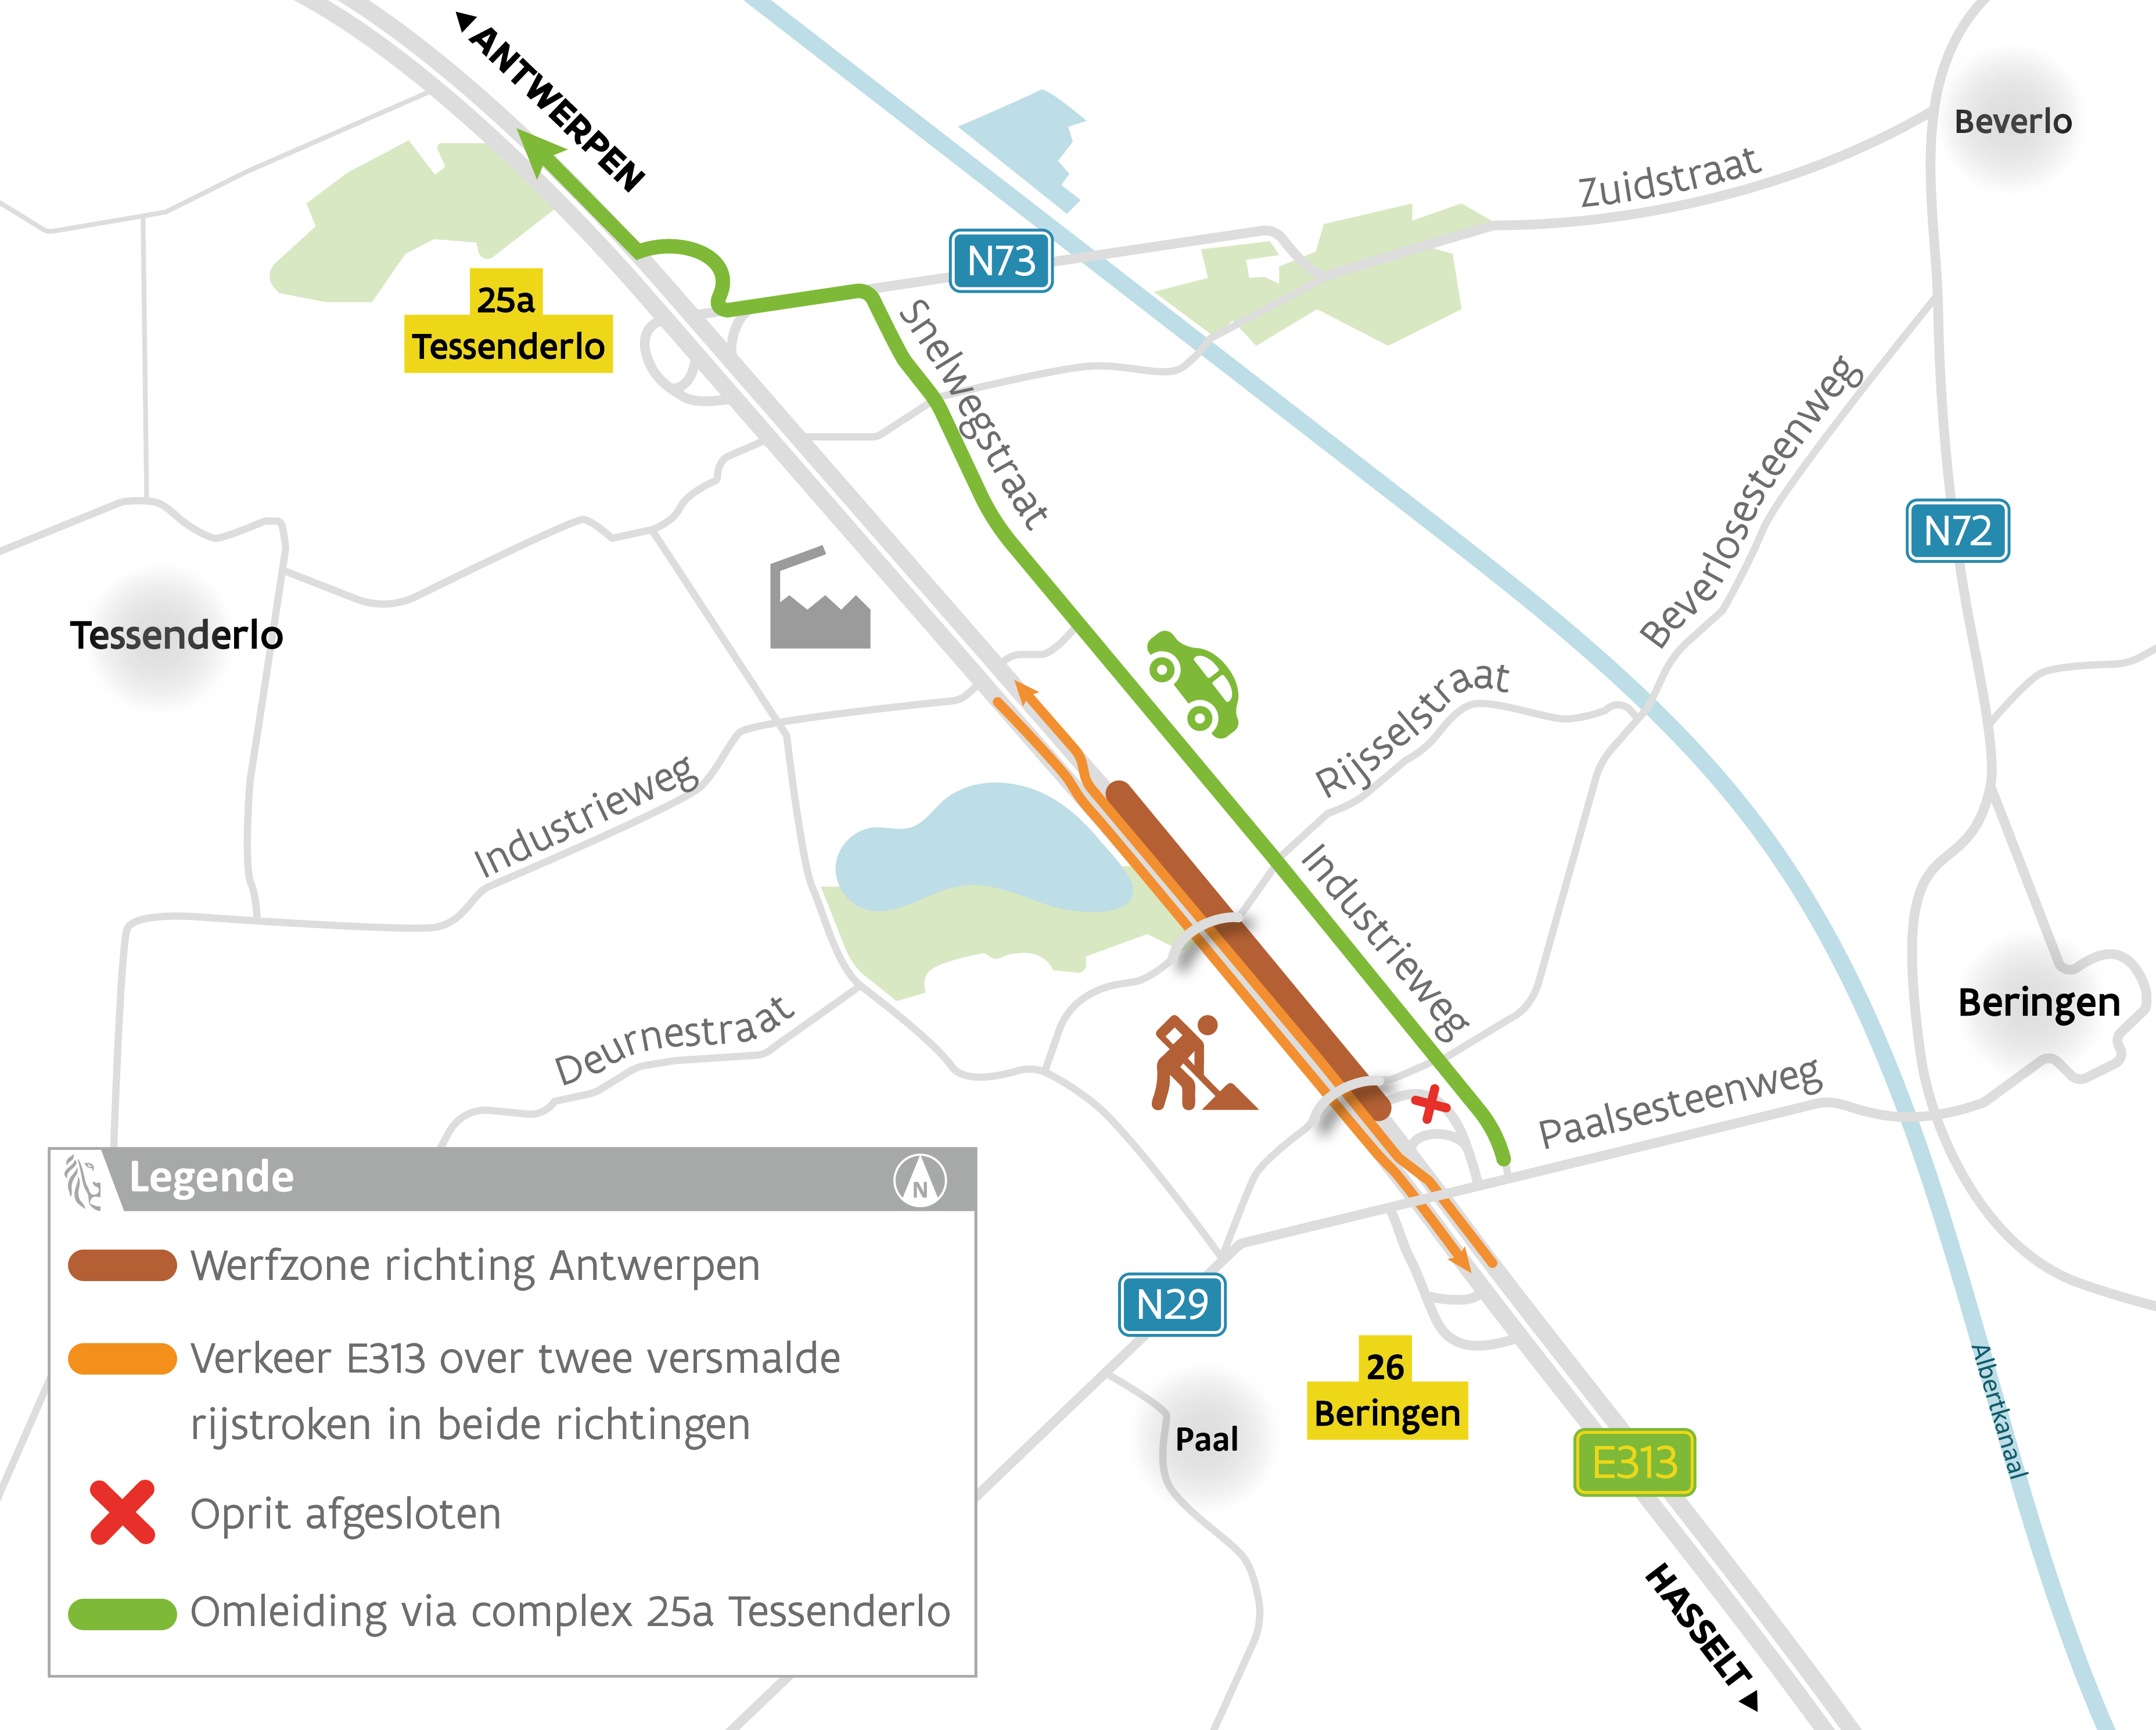 E313 Beringen - start werken richting Antwerpen